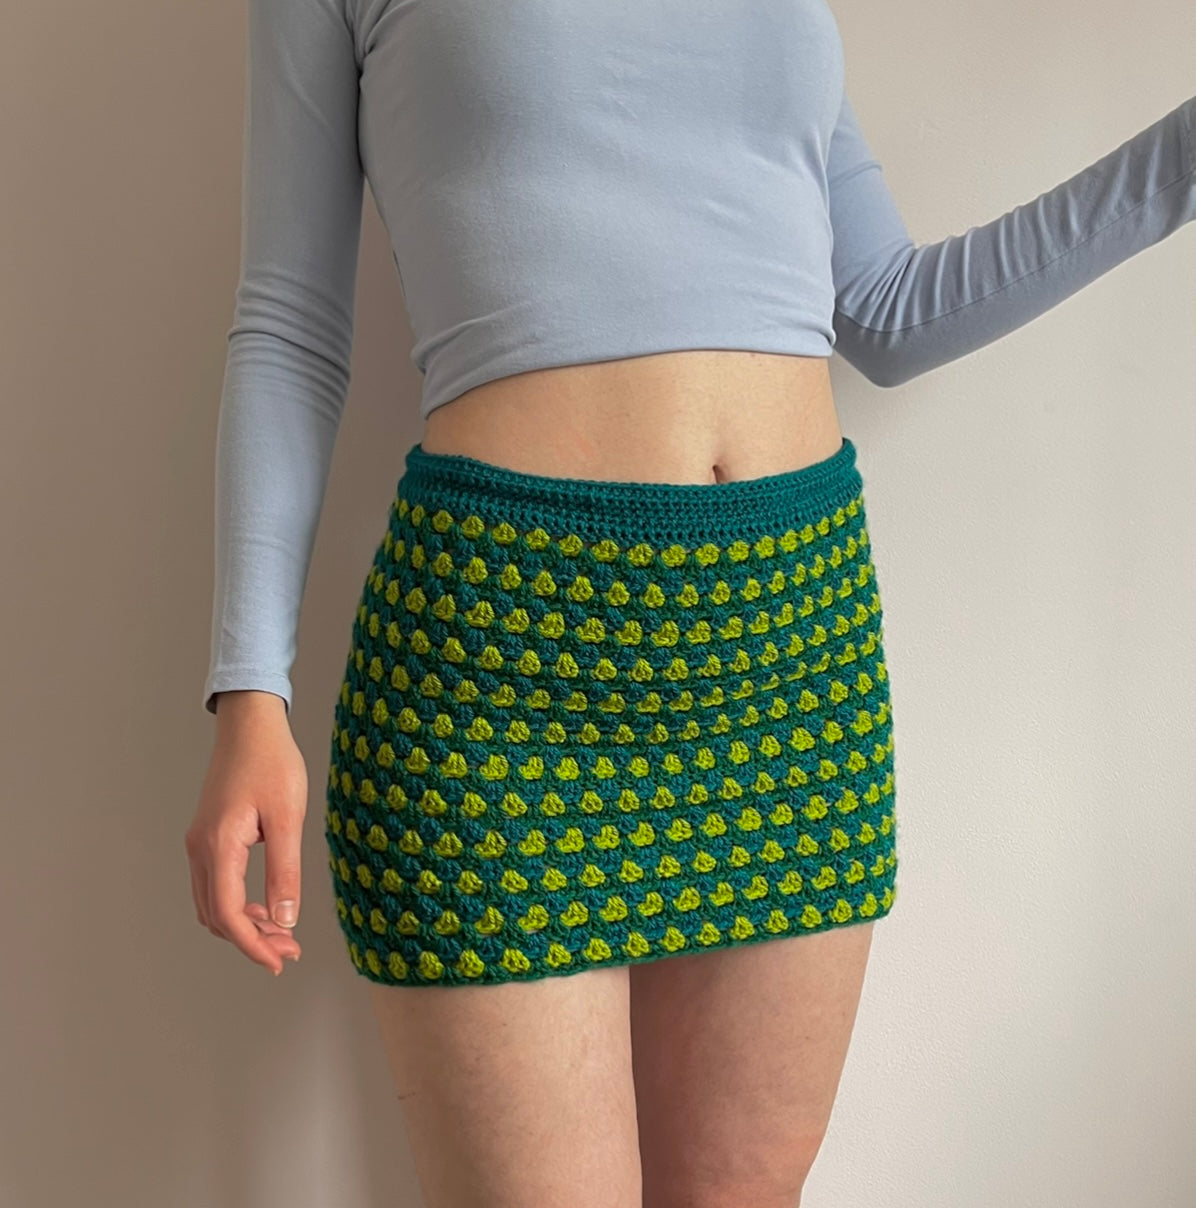 Handmade retro crochet mini skirt in teal and green